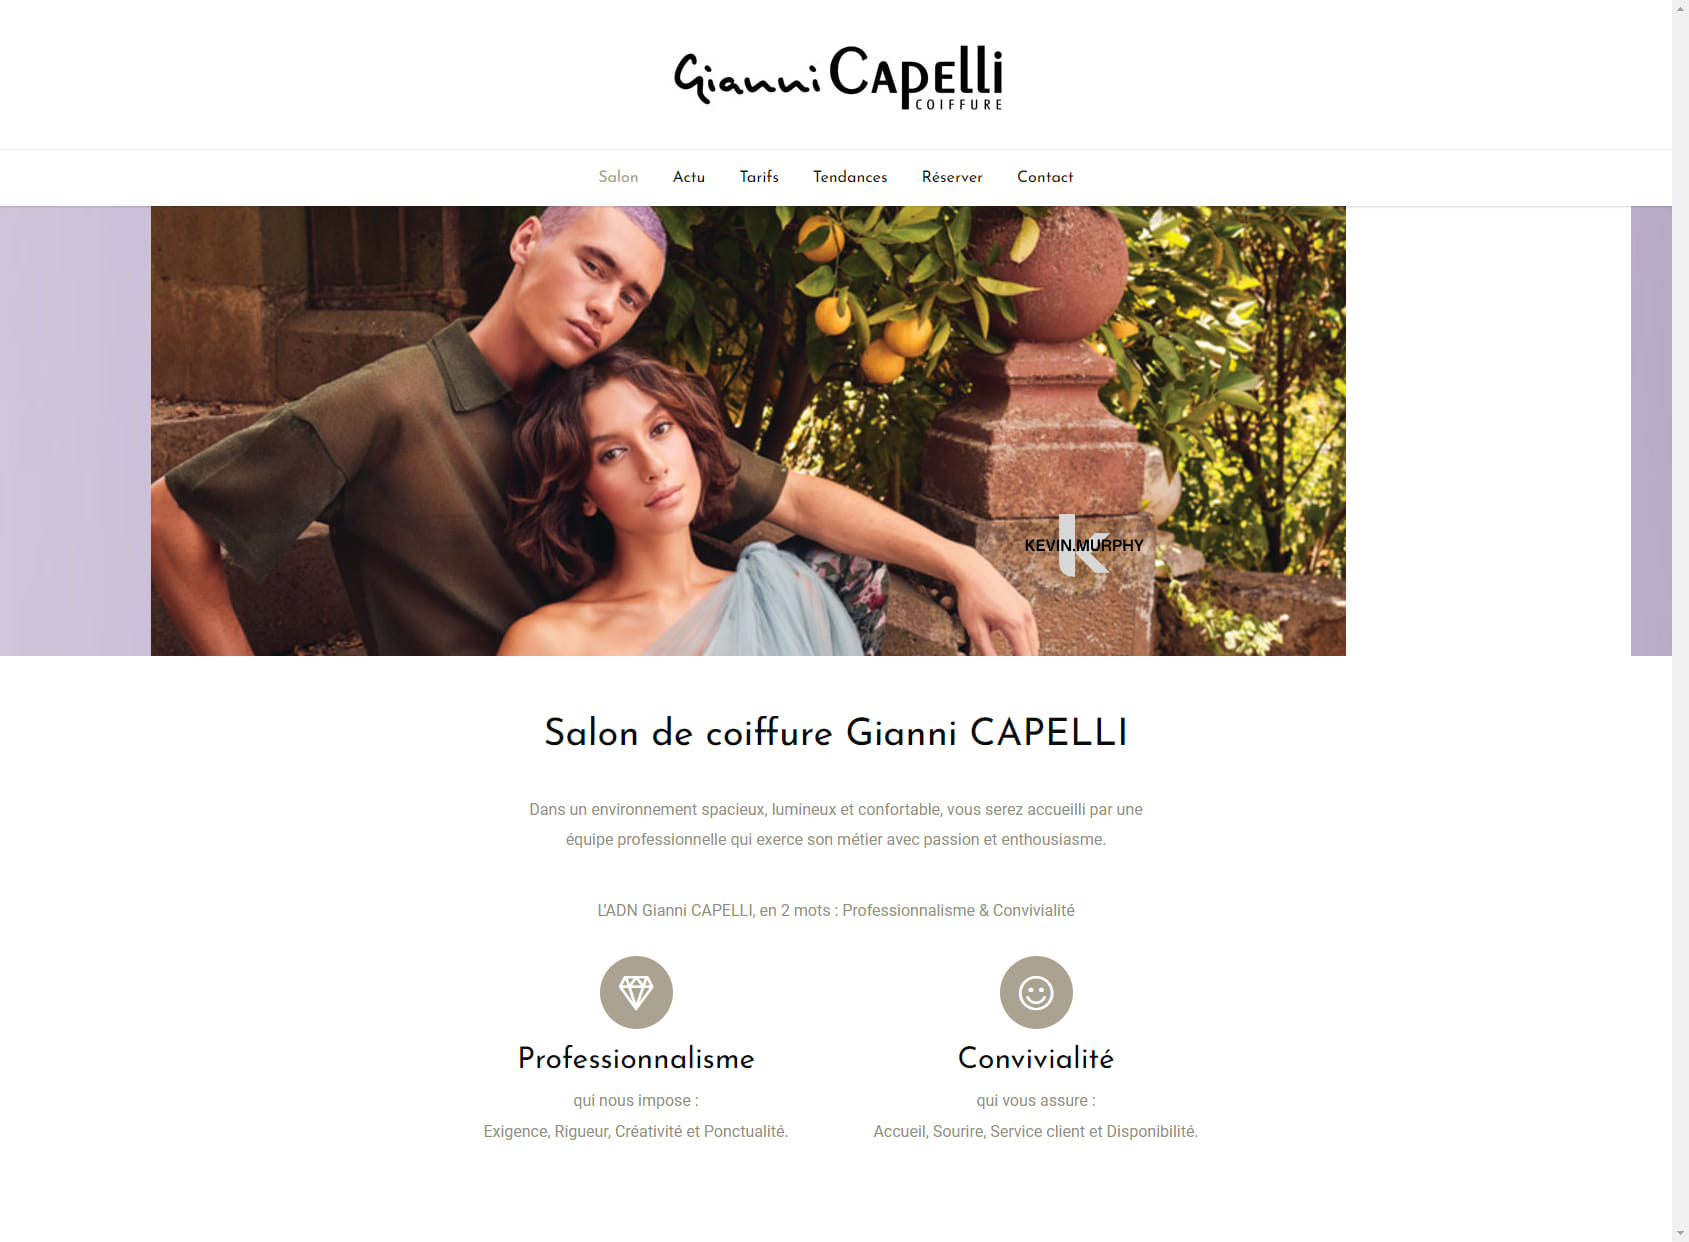 Gianni CAPELLI - Boulogne Billancourt